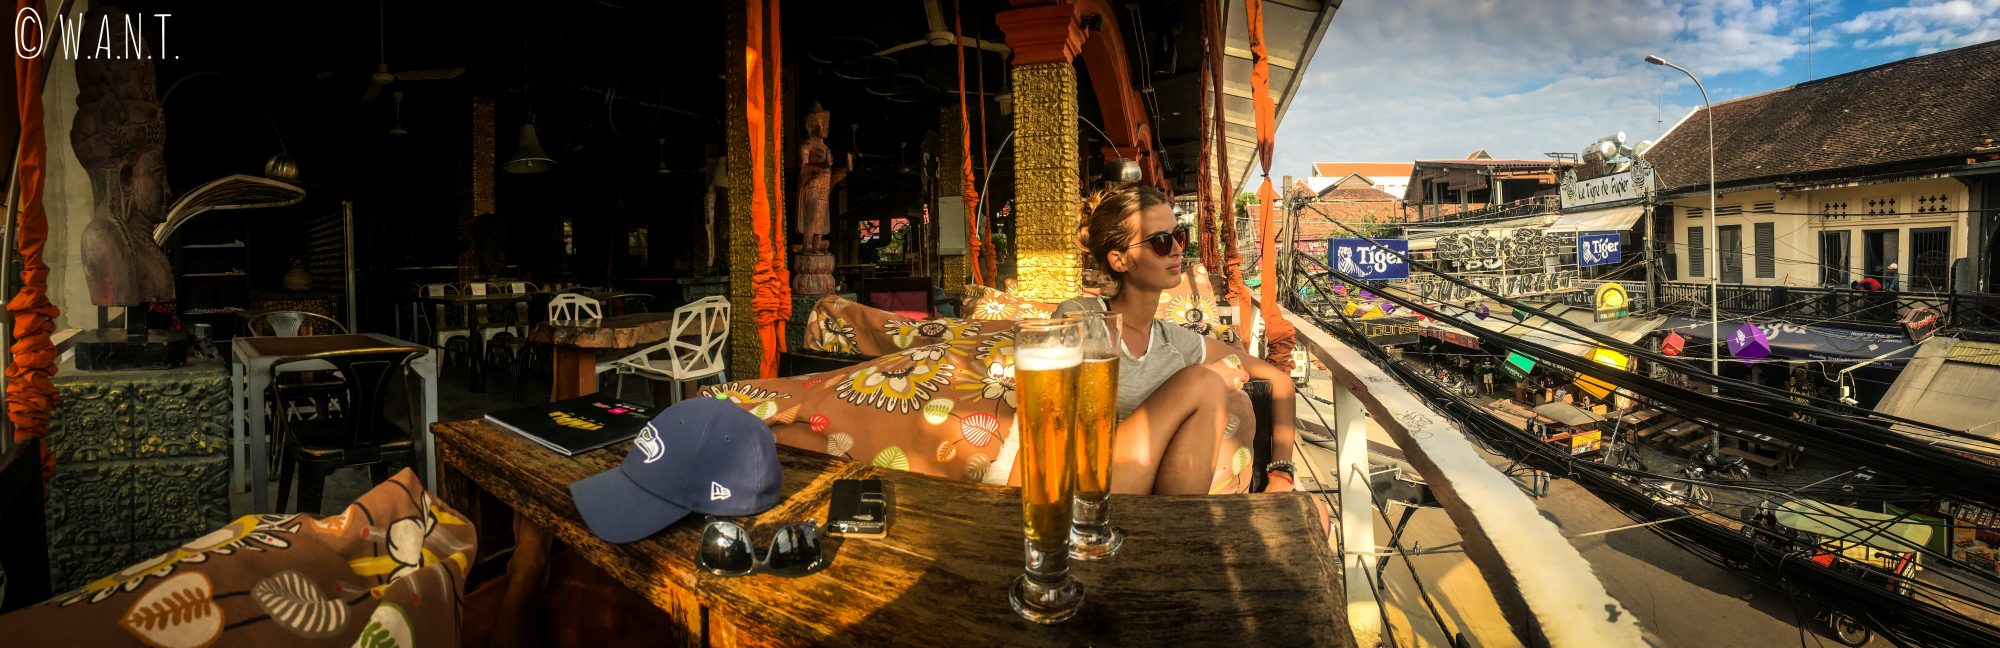 Panorama depuis le Temple Club sur Pub Street à Siem Reap